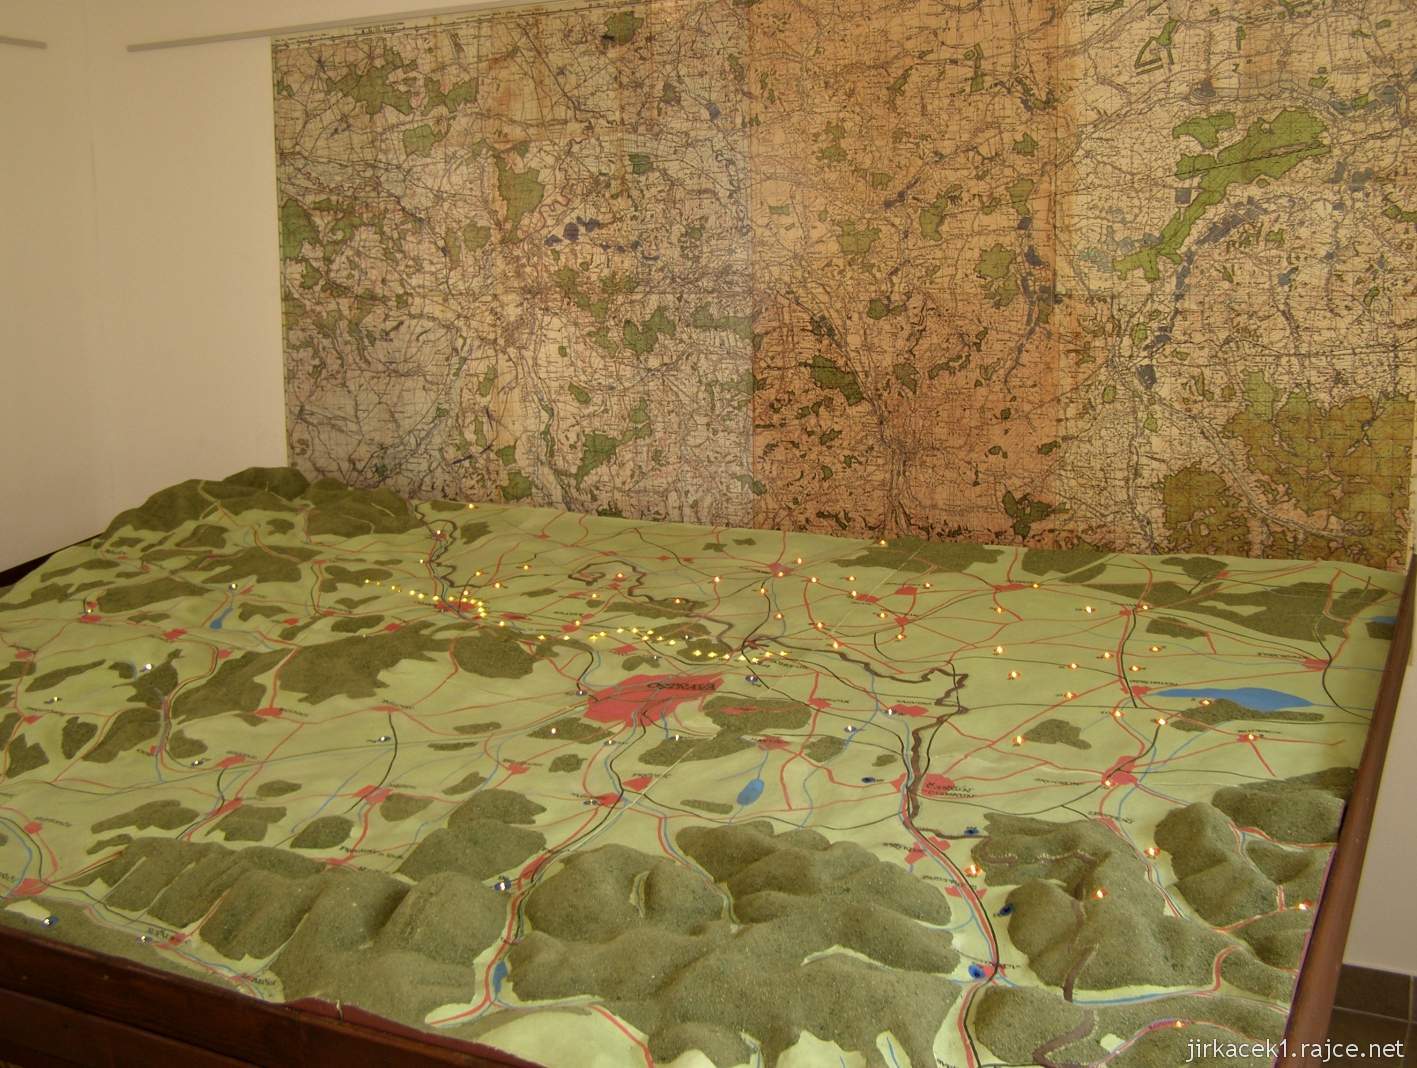 Hrabyně - Národní památník II. světové války 07 - výstava v muzeu - mapa ostravské vojenské operace 2.sv.války